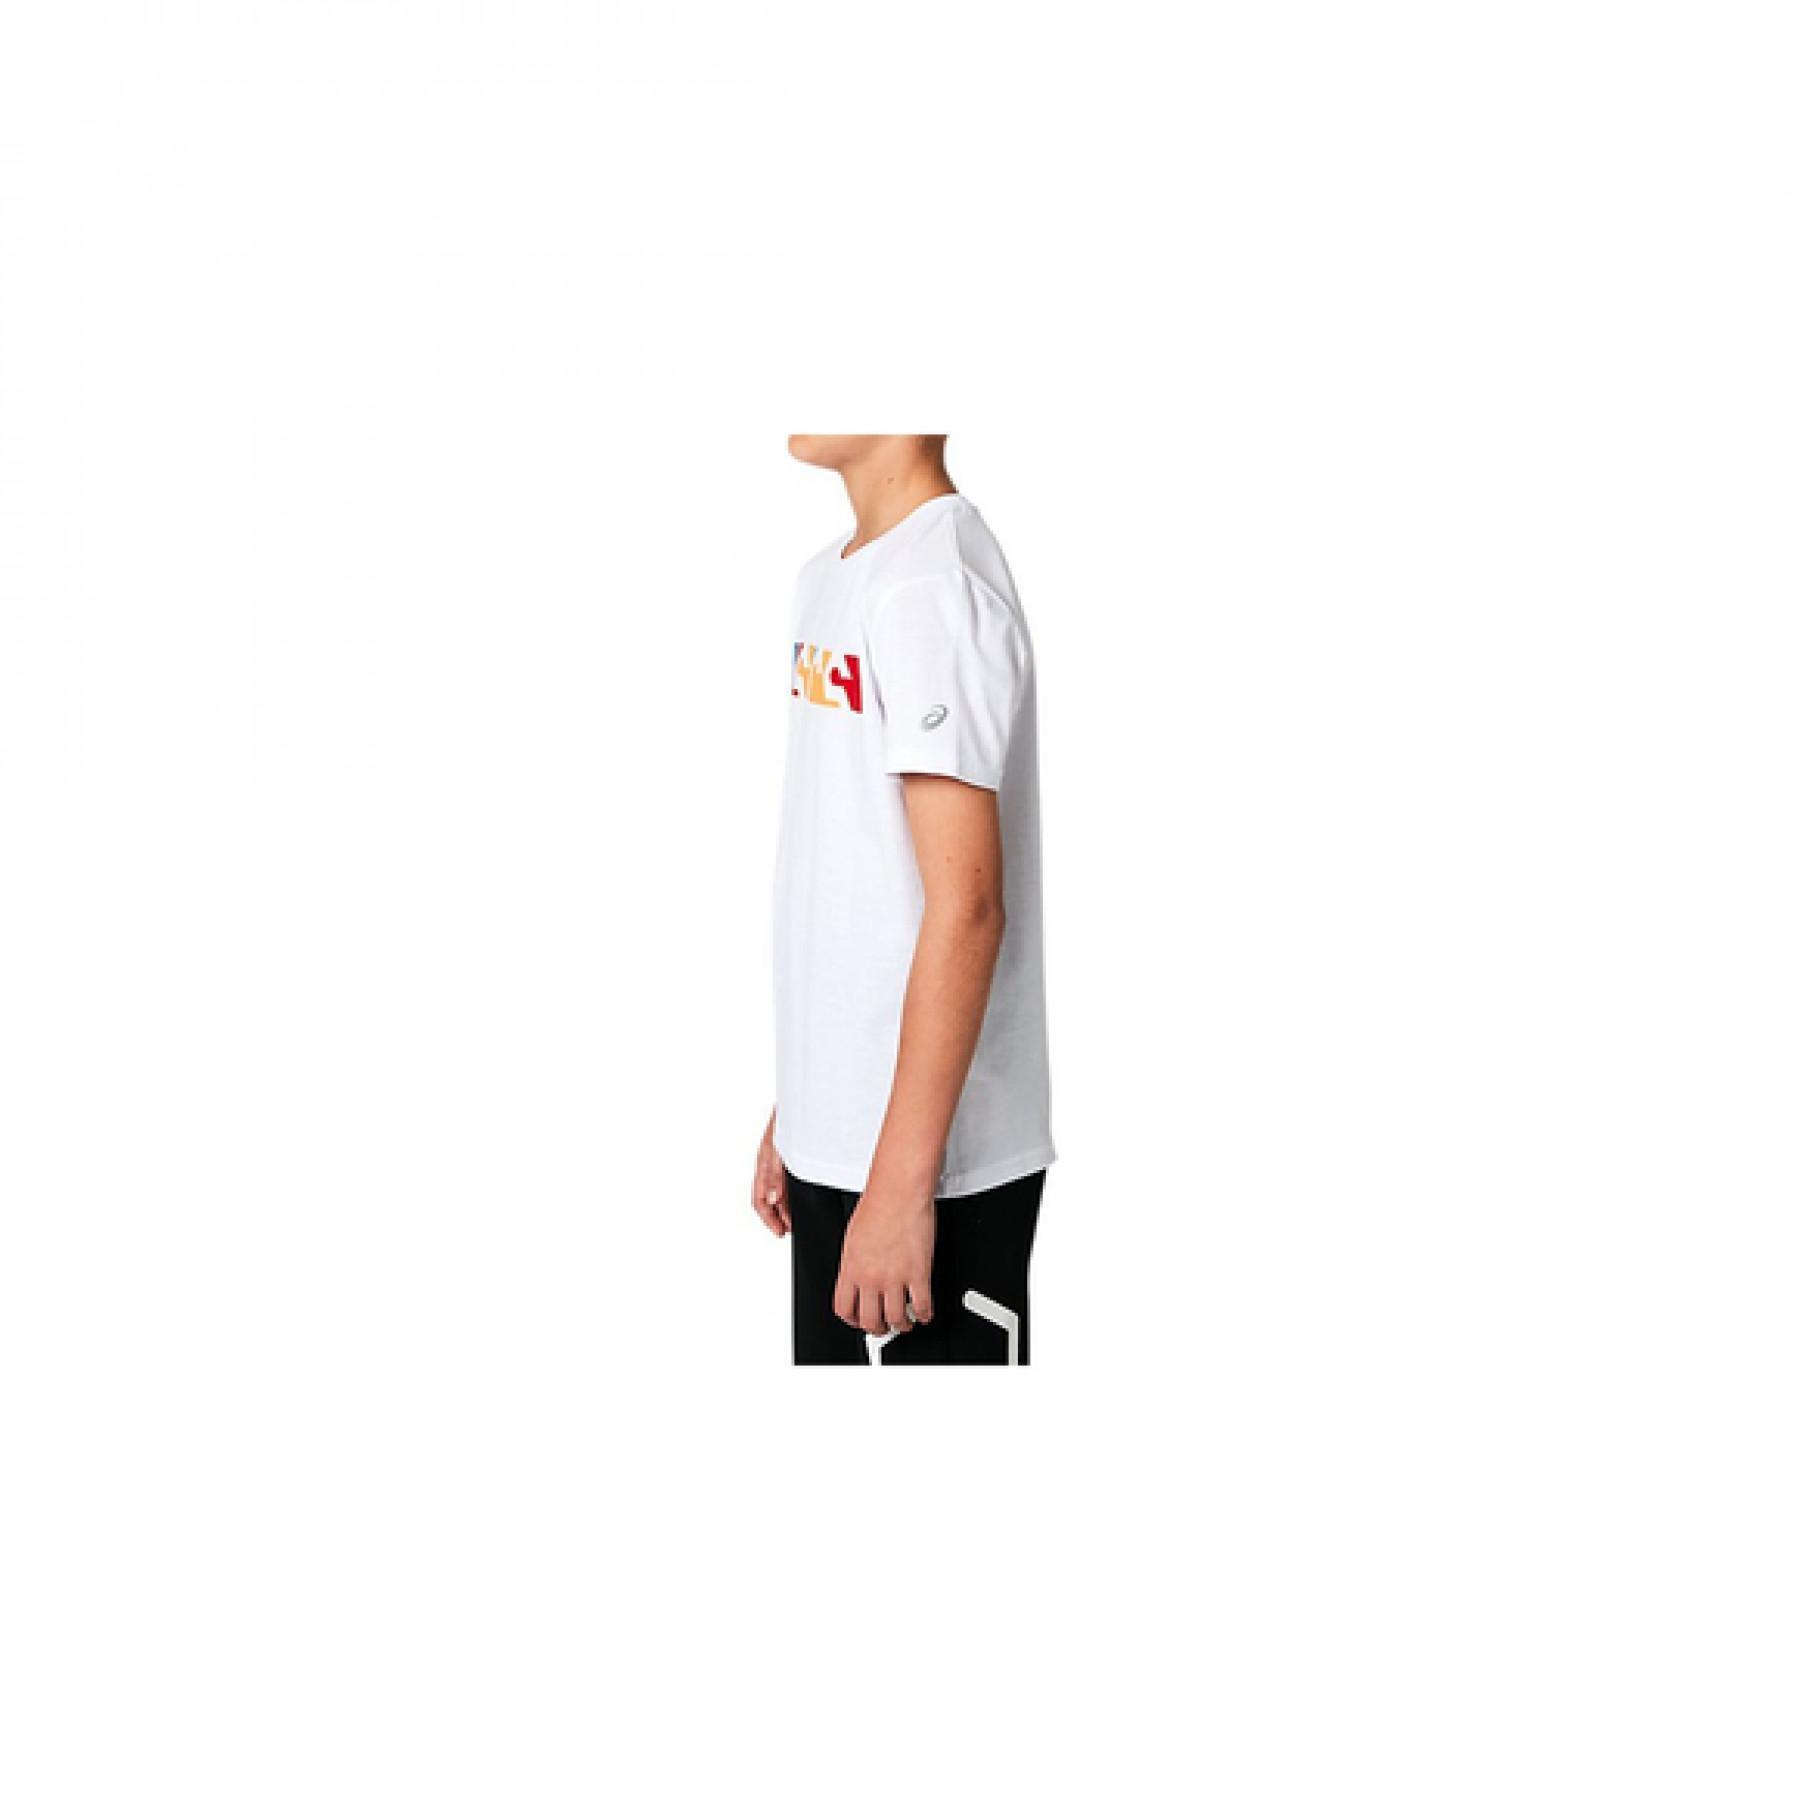 T-shirt för barn Asics b 3 color Gpxt